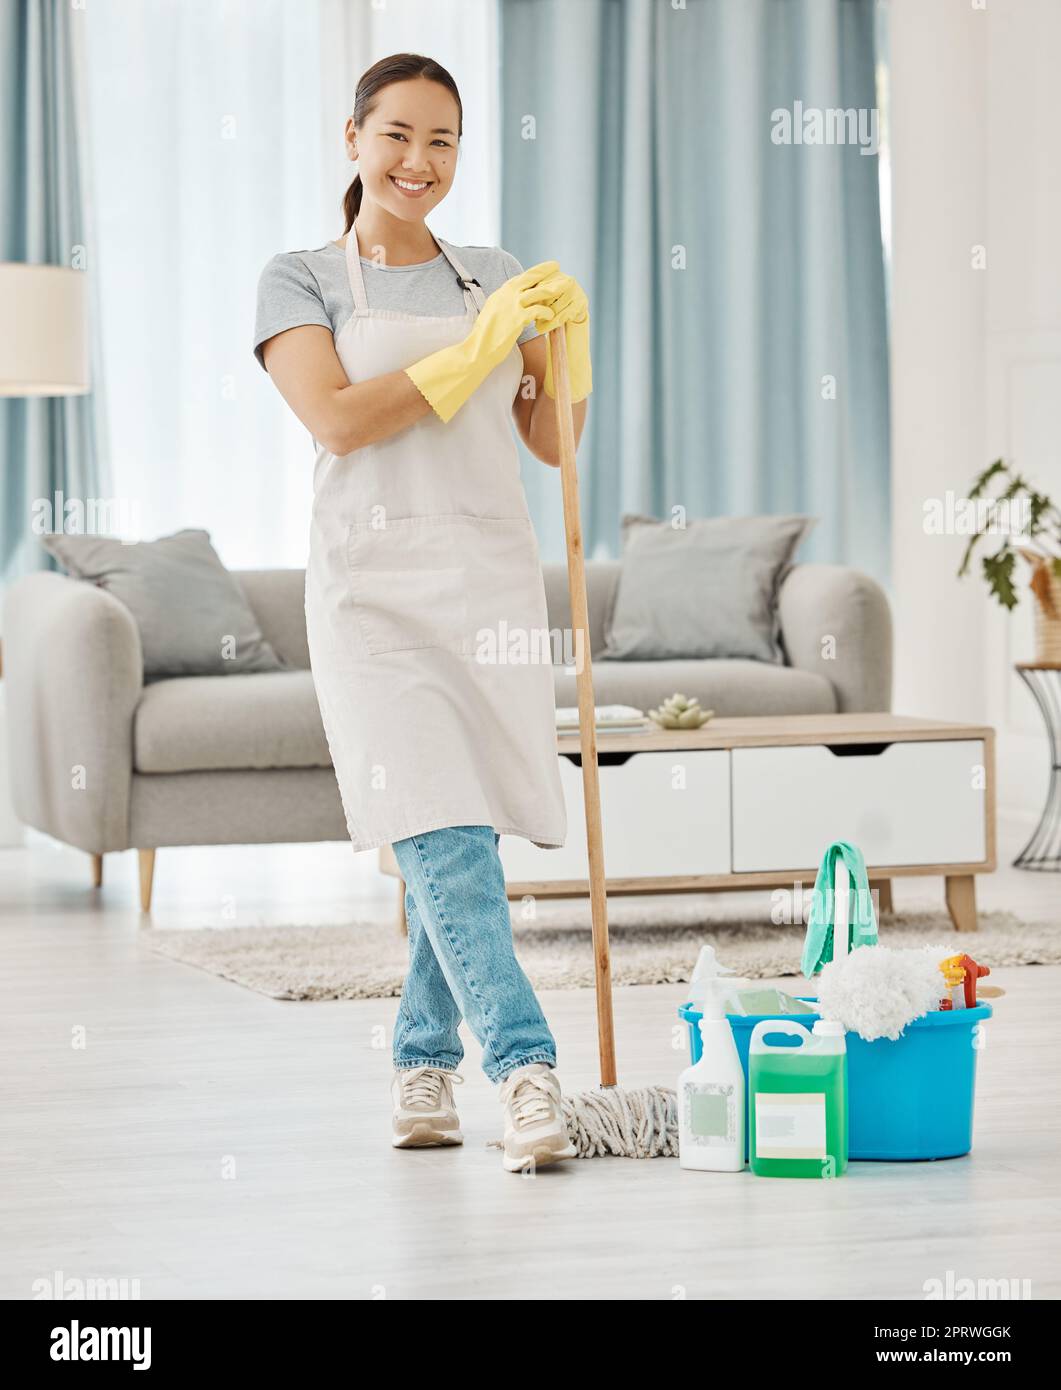 Pulizia del pavimento, lavoro in casa e donna che lavora nel servizio  domestico pulizia del soggiorno, fare il lavoro con il sorriso e felice di  pulire casa appartamento. Ritratto delle donne delle